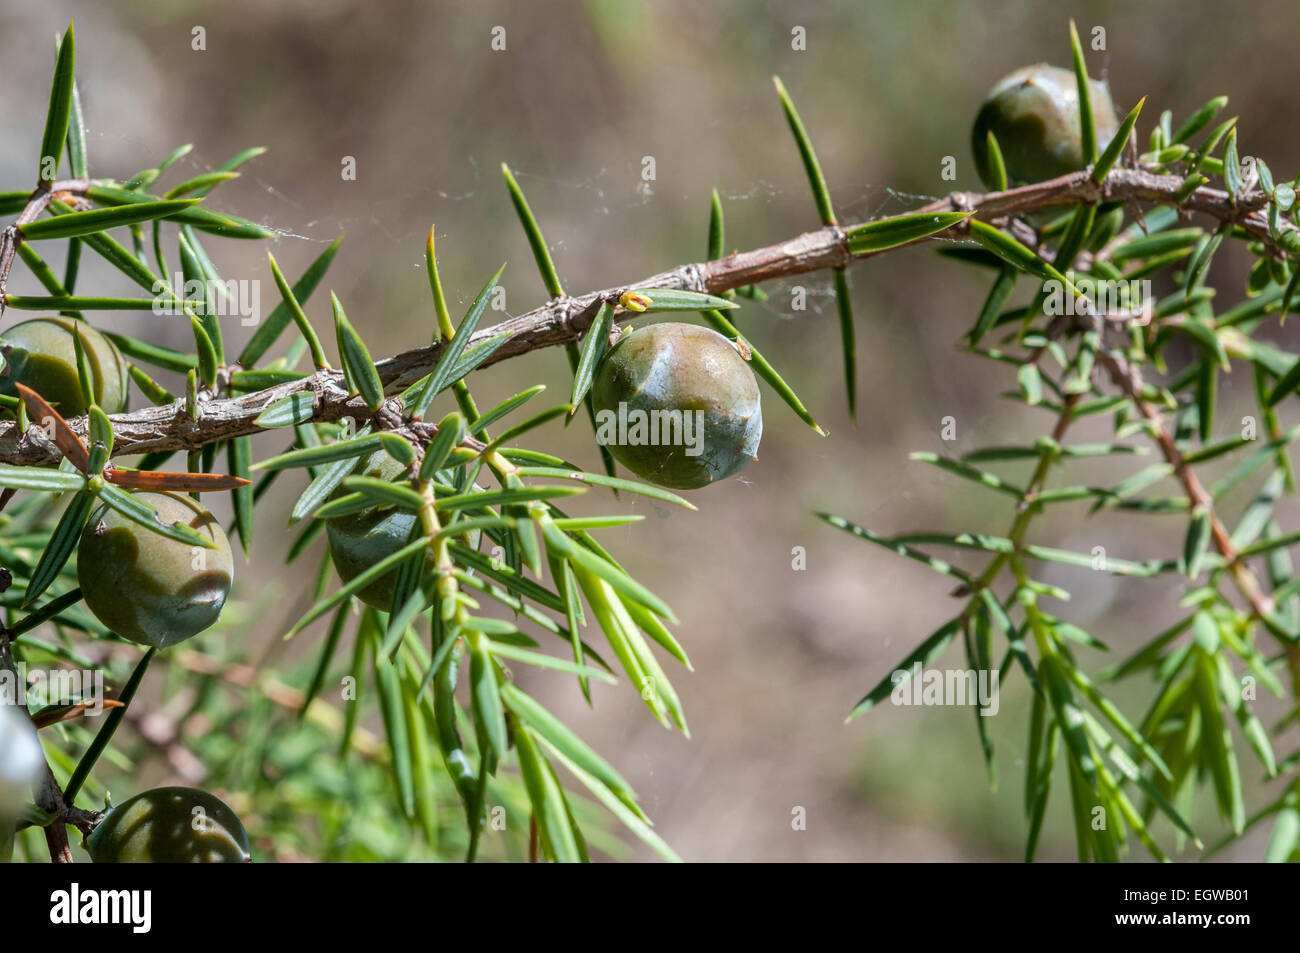 Fruits (immature cones) of prickly juniper, Juniperus oxycedrus Stock Photo